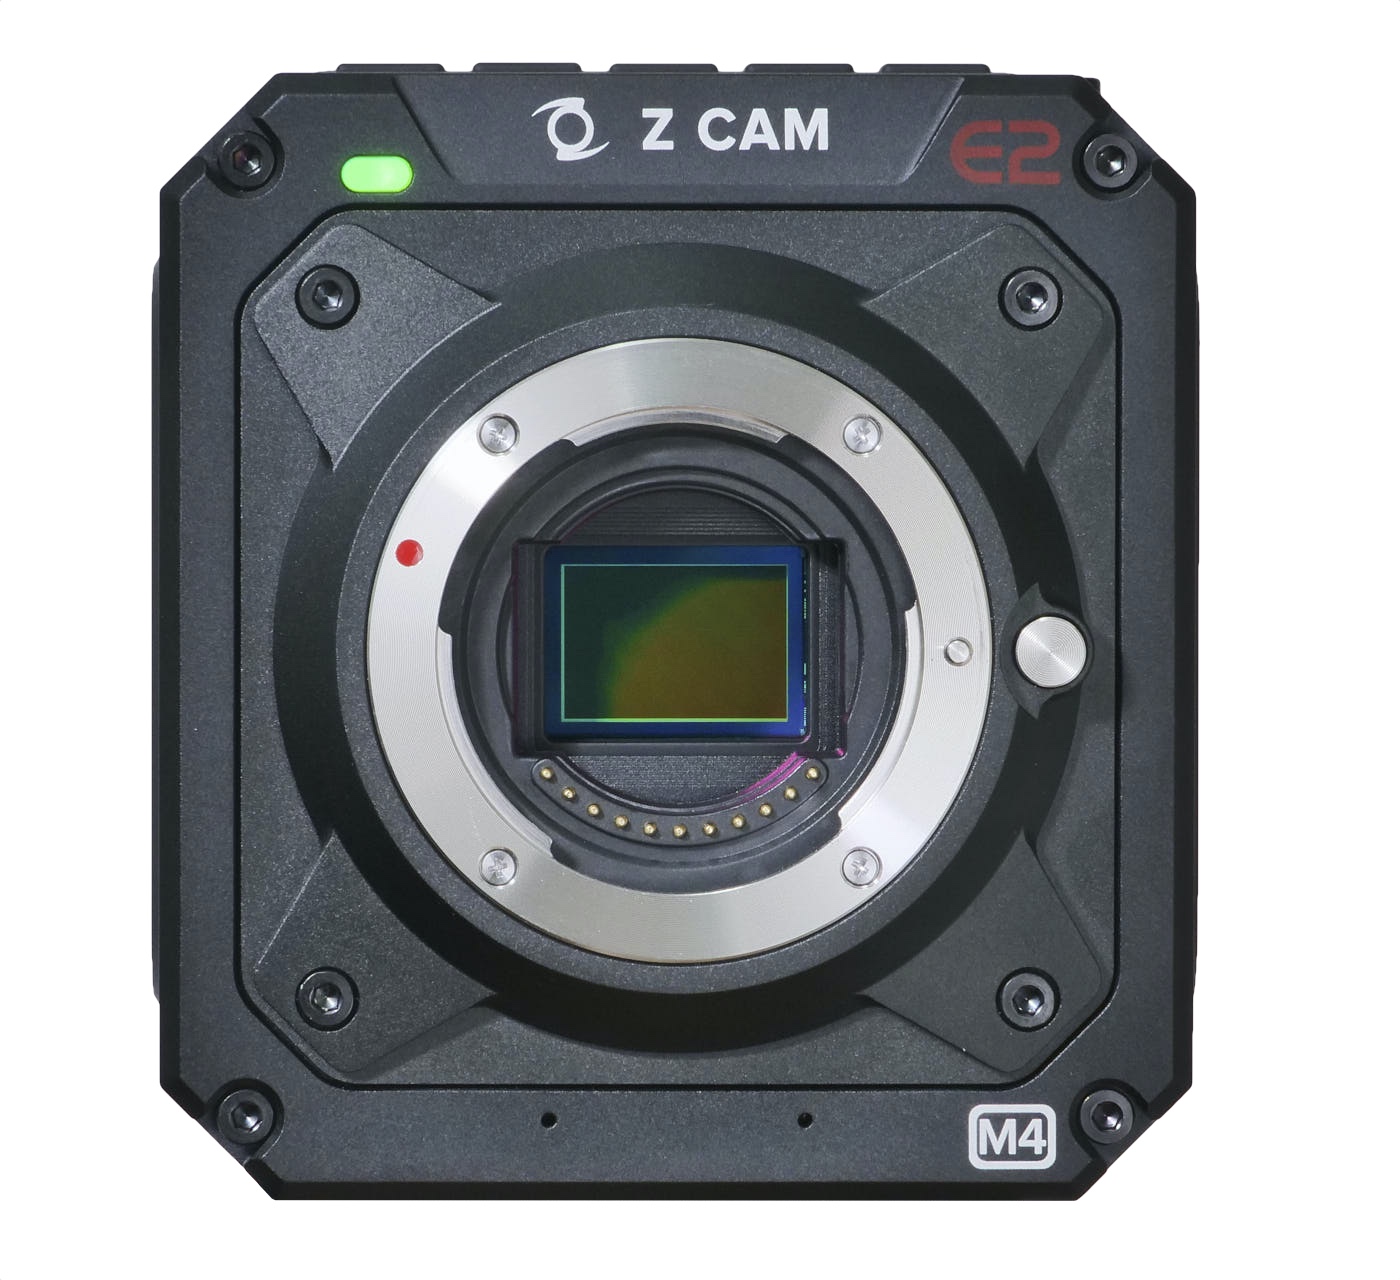 Review Z Cam E2 M4 Mft Cine Camera Part 1 By Adam Wilt Provideo Coalition